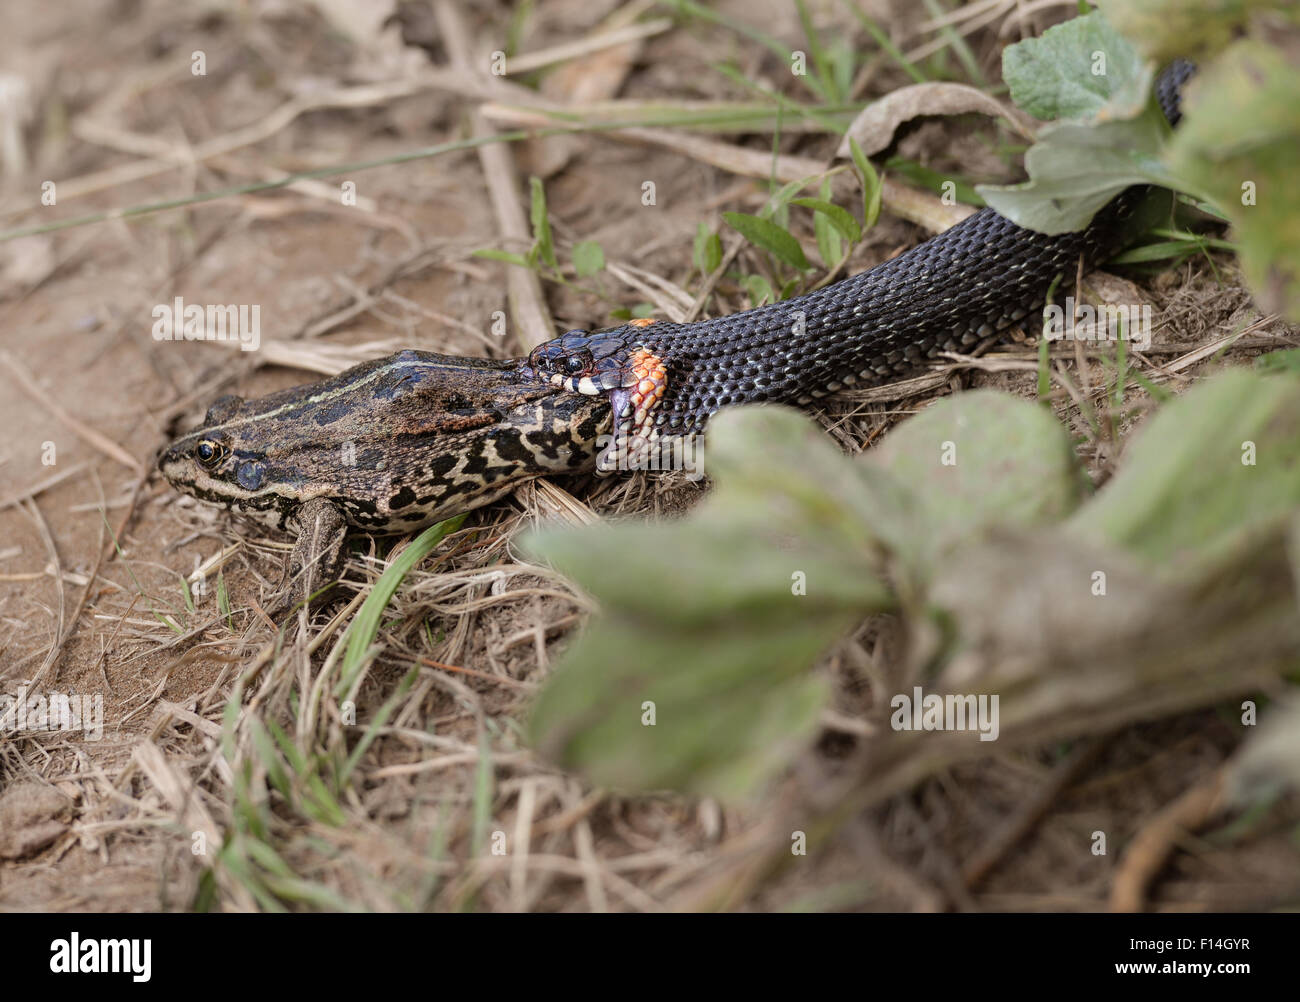 Grass snake eating frog Banque D'Images